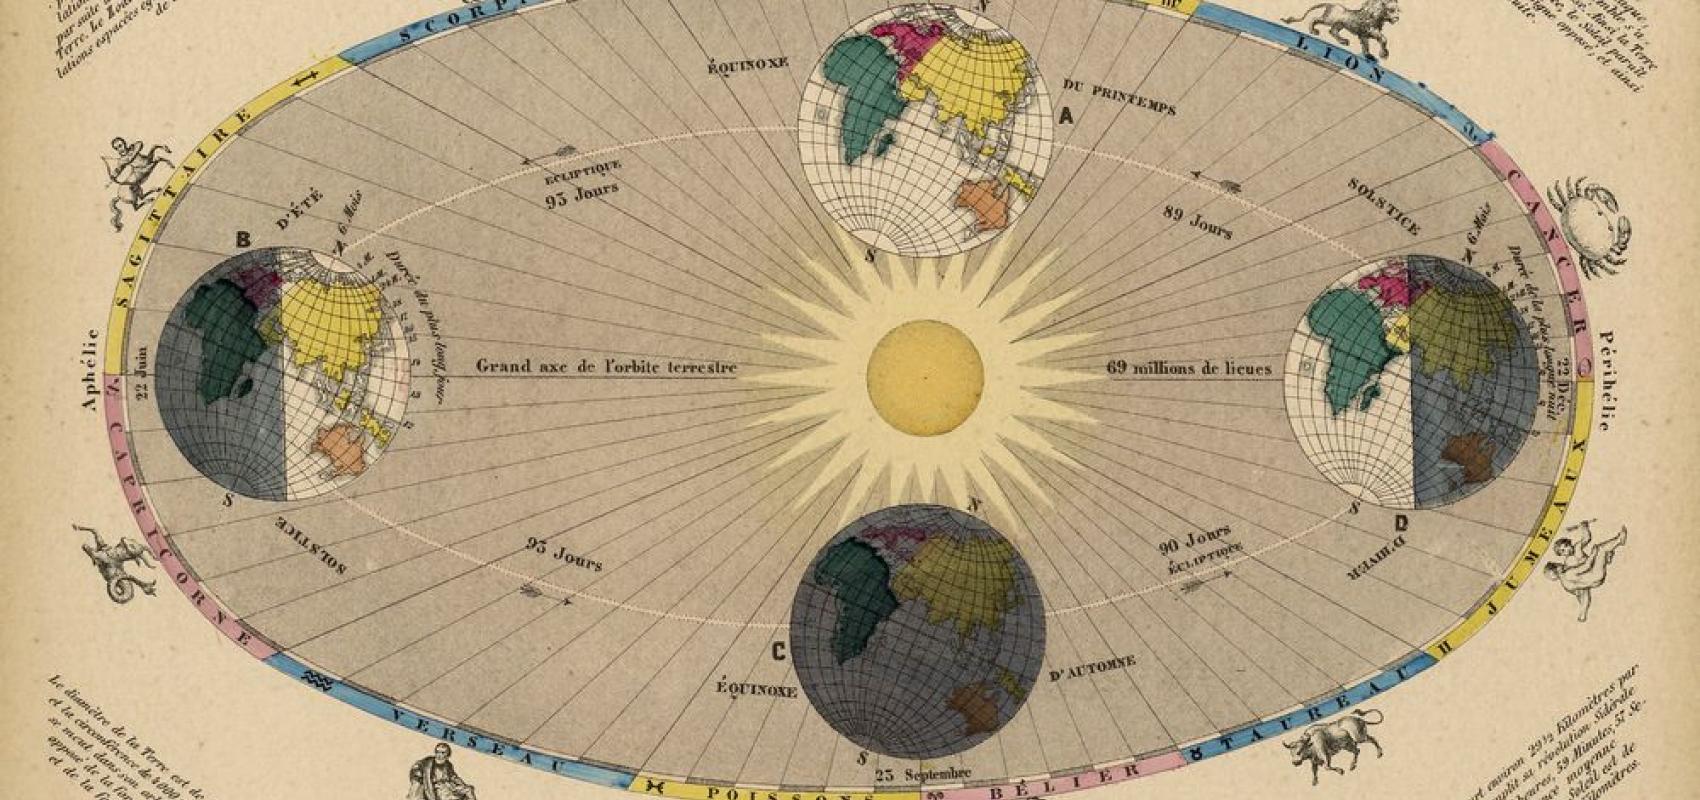 Astronomie populaire ou description des corps célestes : avec atlas en tableaux transparents composé de 12 planches coloriées -  - BnF, département des Cartes et plans